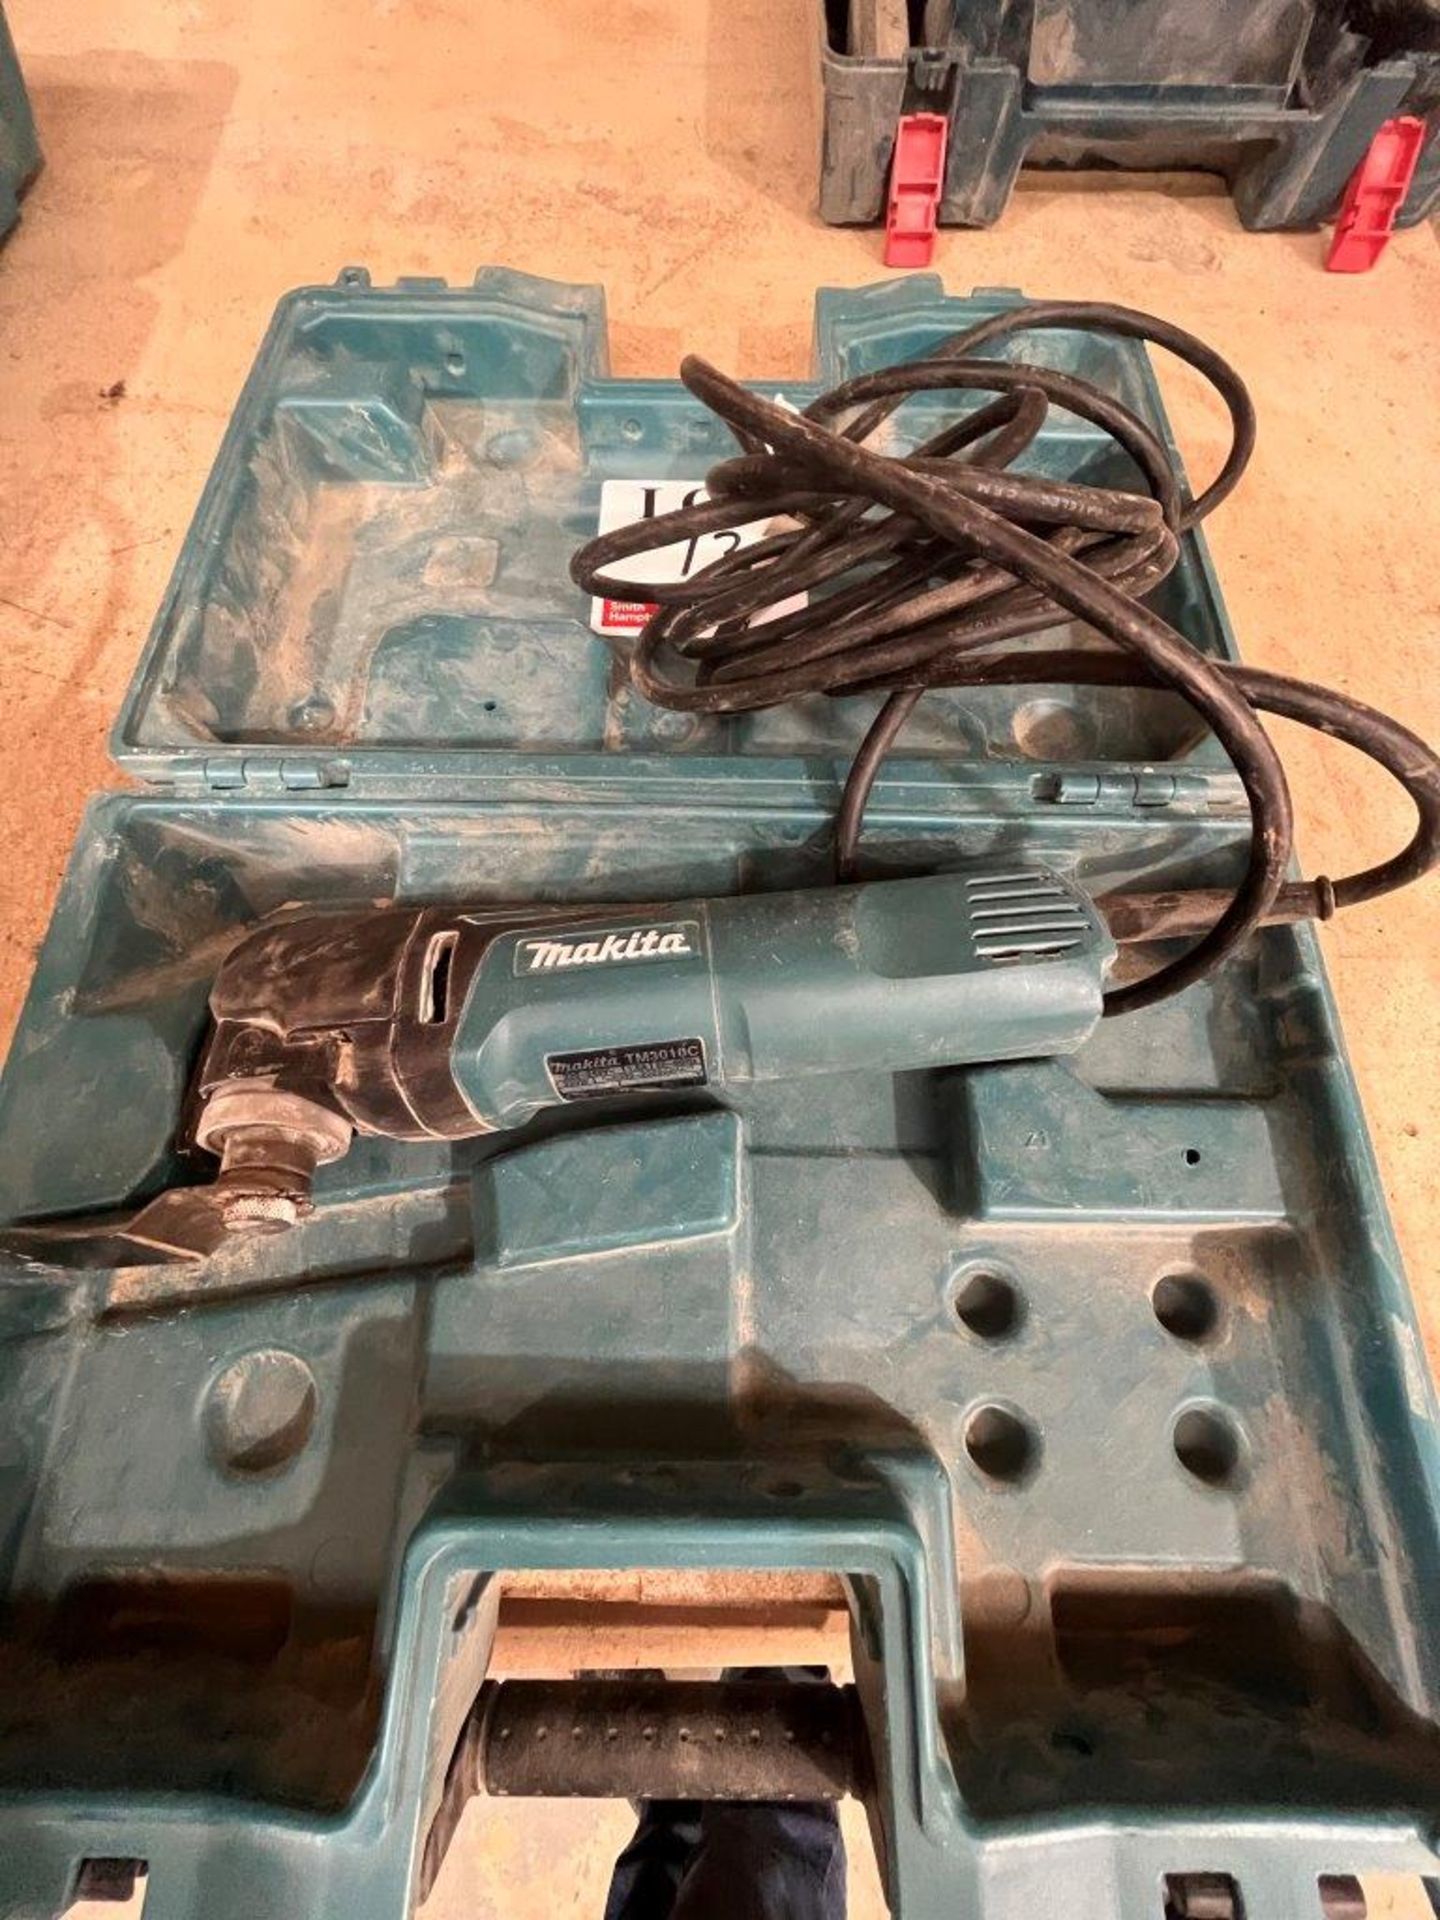 Makita TM3010C multi-tool, 240 volt, with carry case